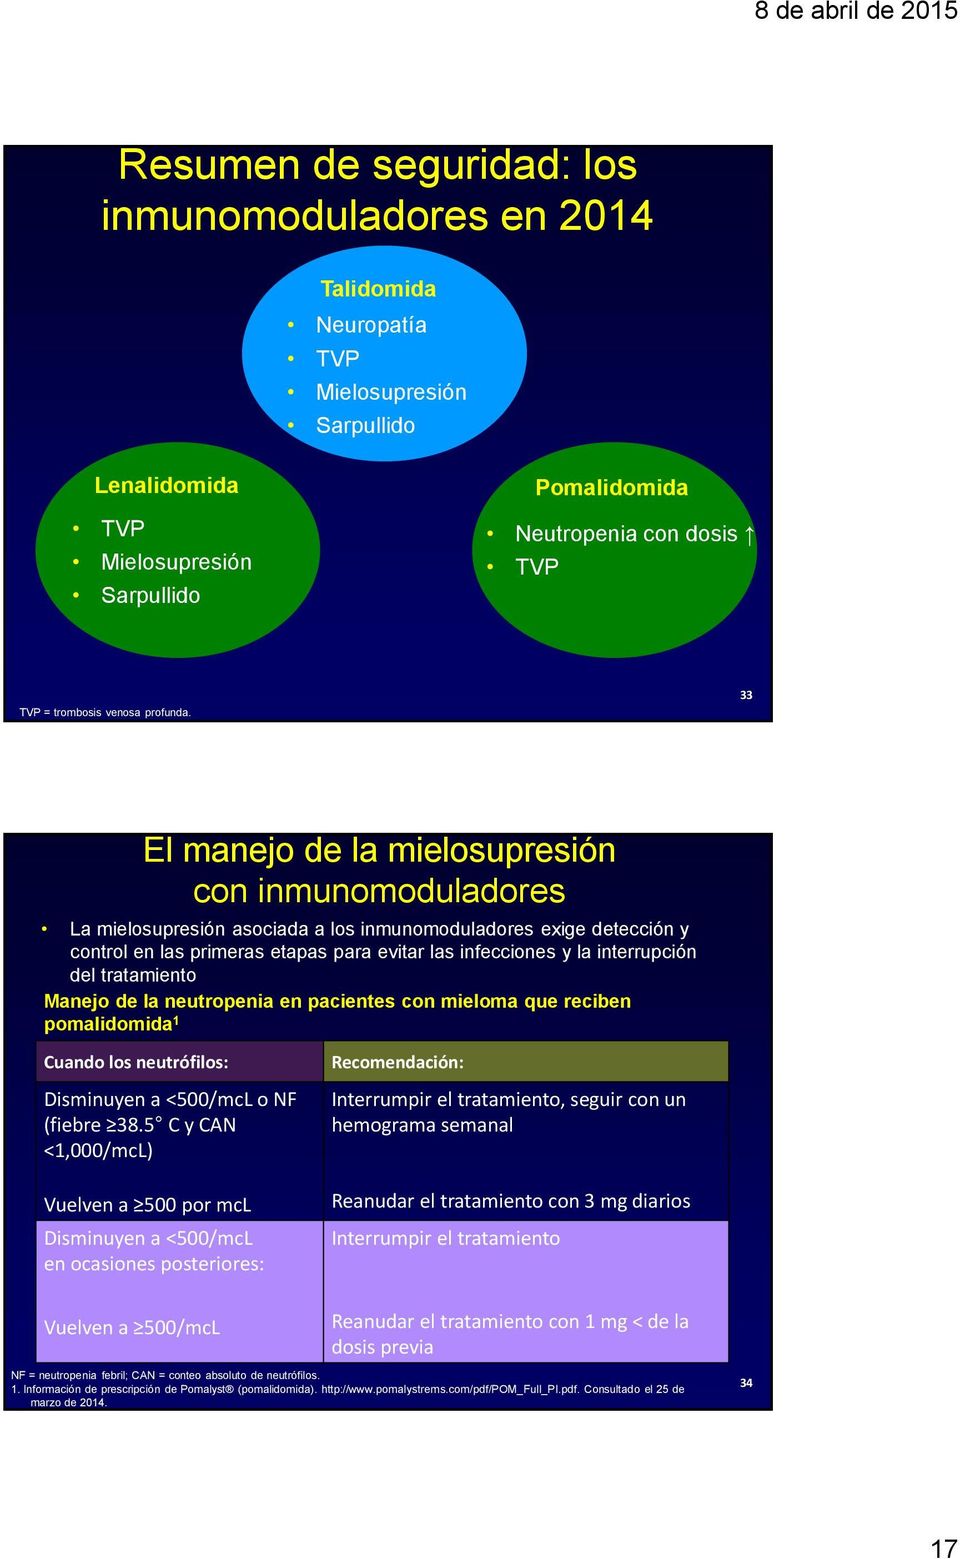 33 El manejo de la mielosupresión con inmunomoduladores La mielosupresión asociada a los inmunomoduladores exige detección y control en las primeras etapas para evitar las infecciones y la